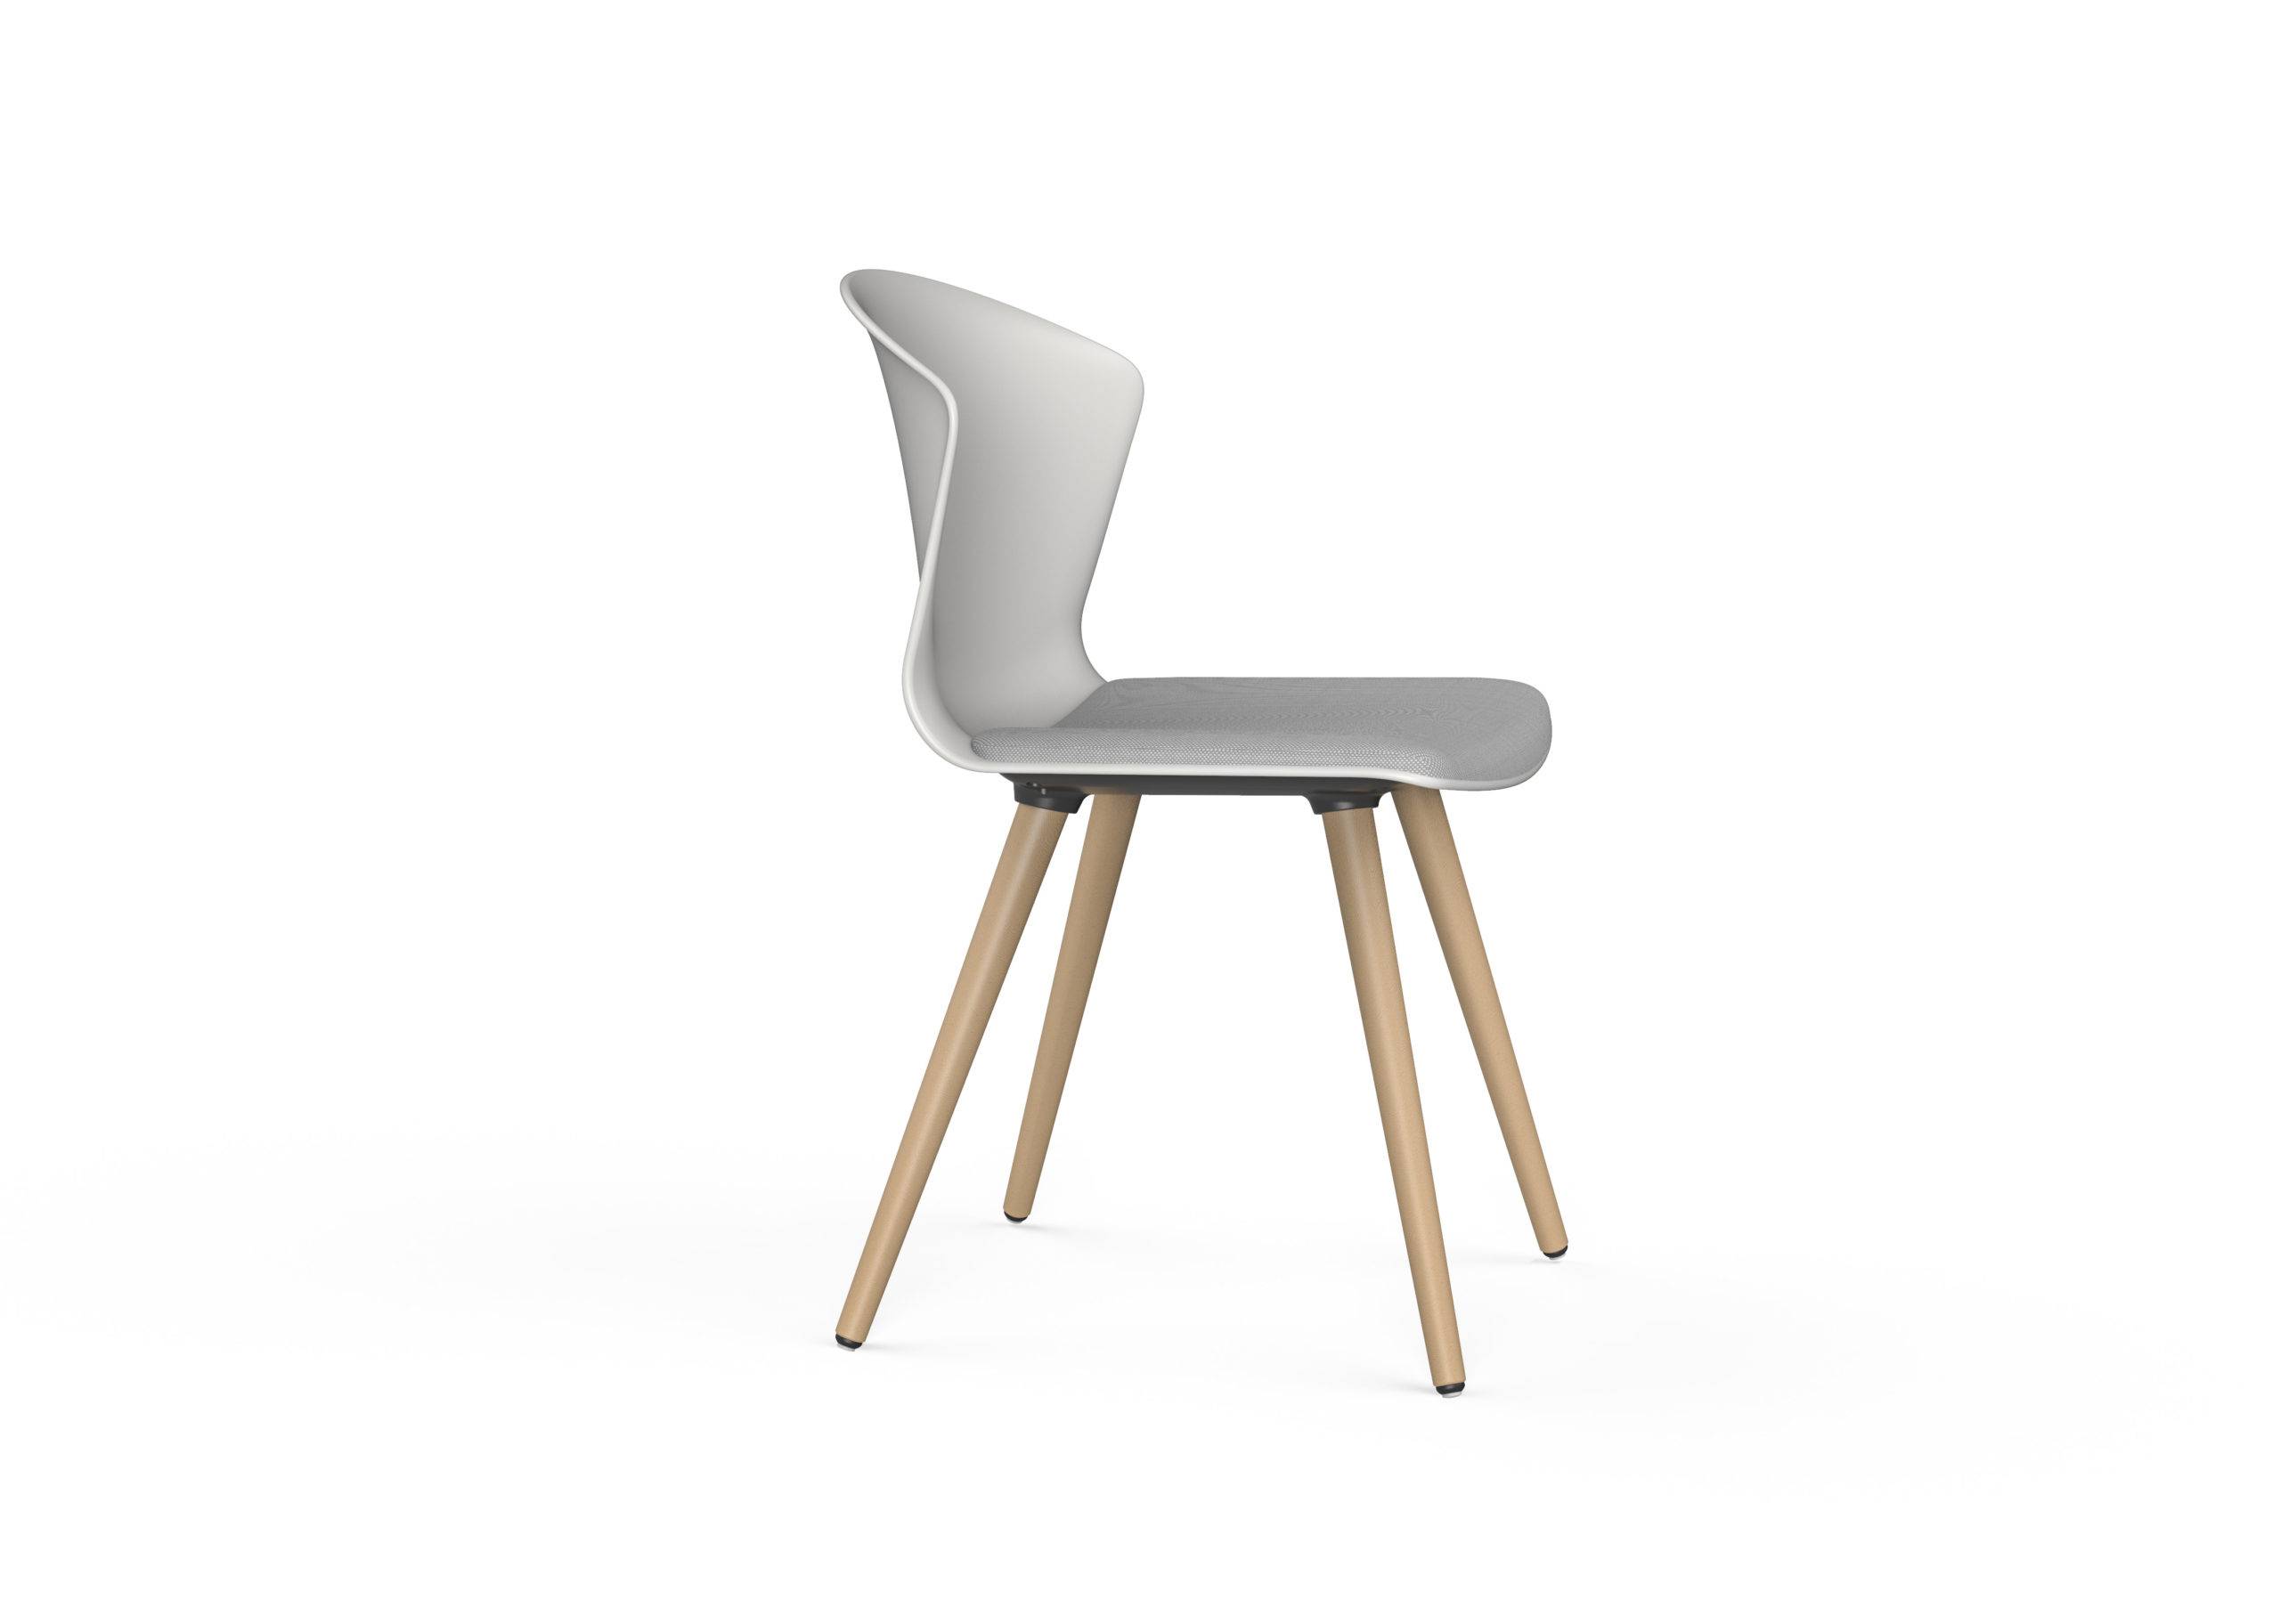 Silla Whass silla de colectividades mobiliario de oficina Impacto Diseño Valencia